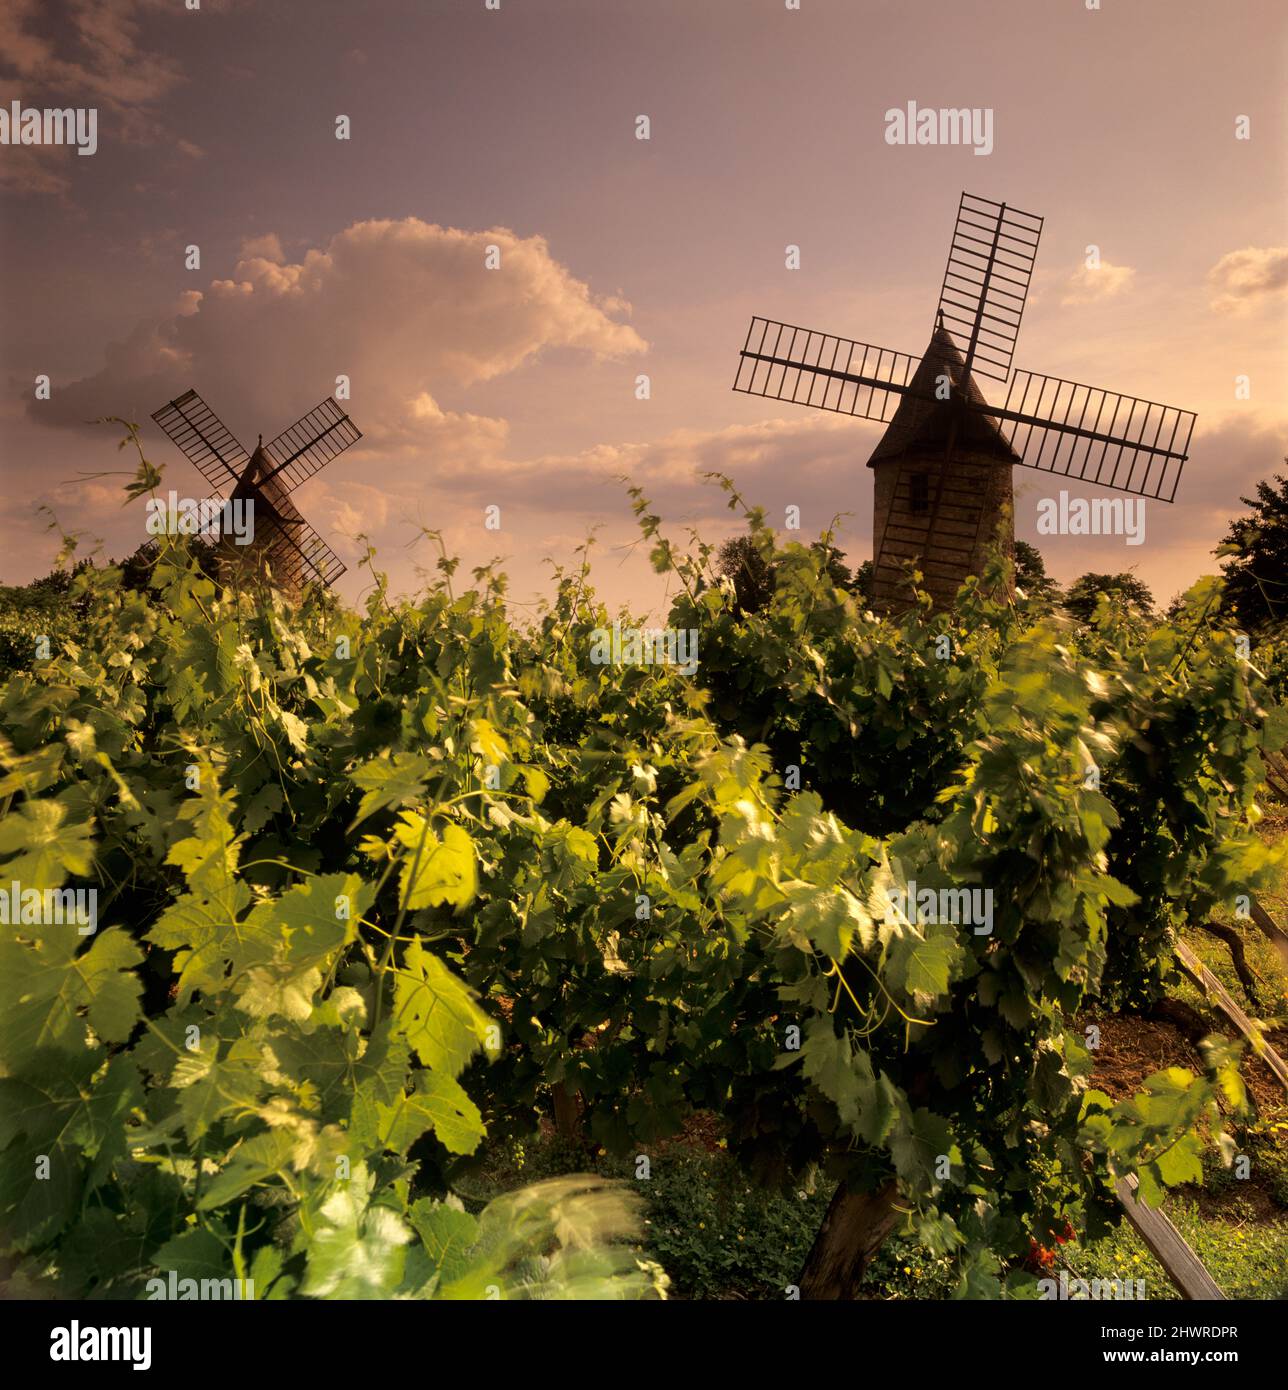 Windmills of Calon set in vineyard, Montagne, near Saint-Emilion, Nouvelle-Aquitaine, France, Europe Stock Photo